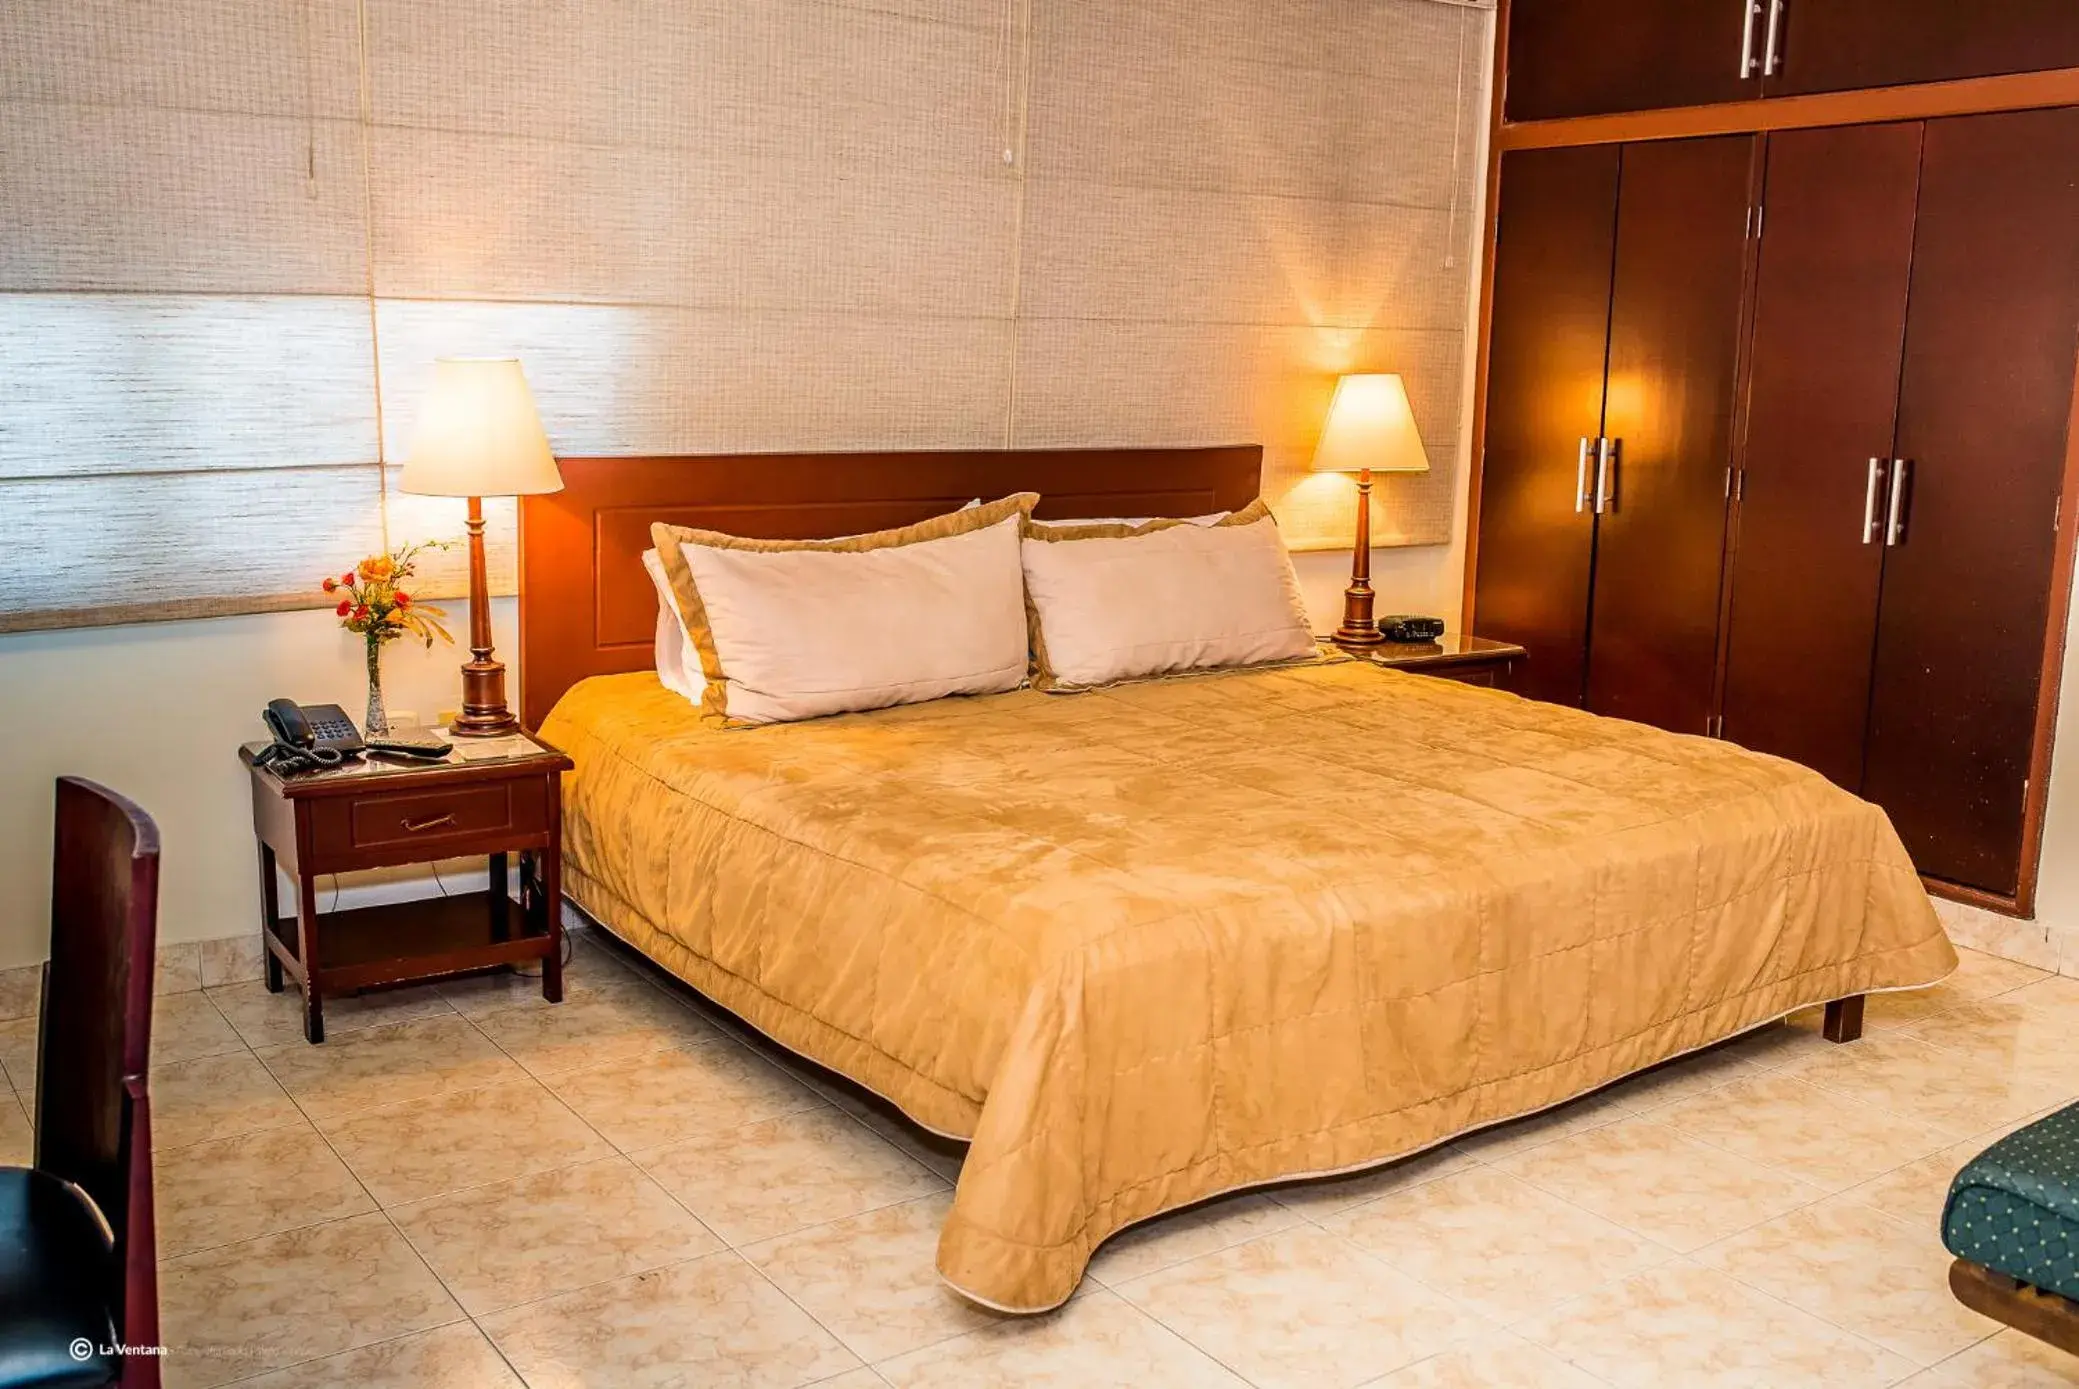 Bed in Hotel San Carlos